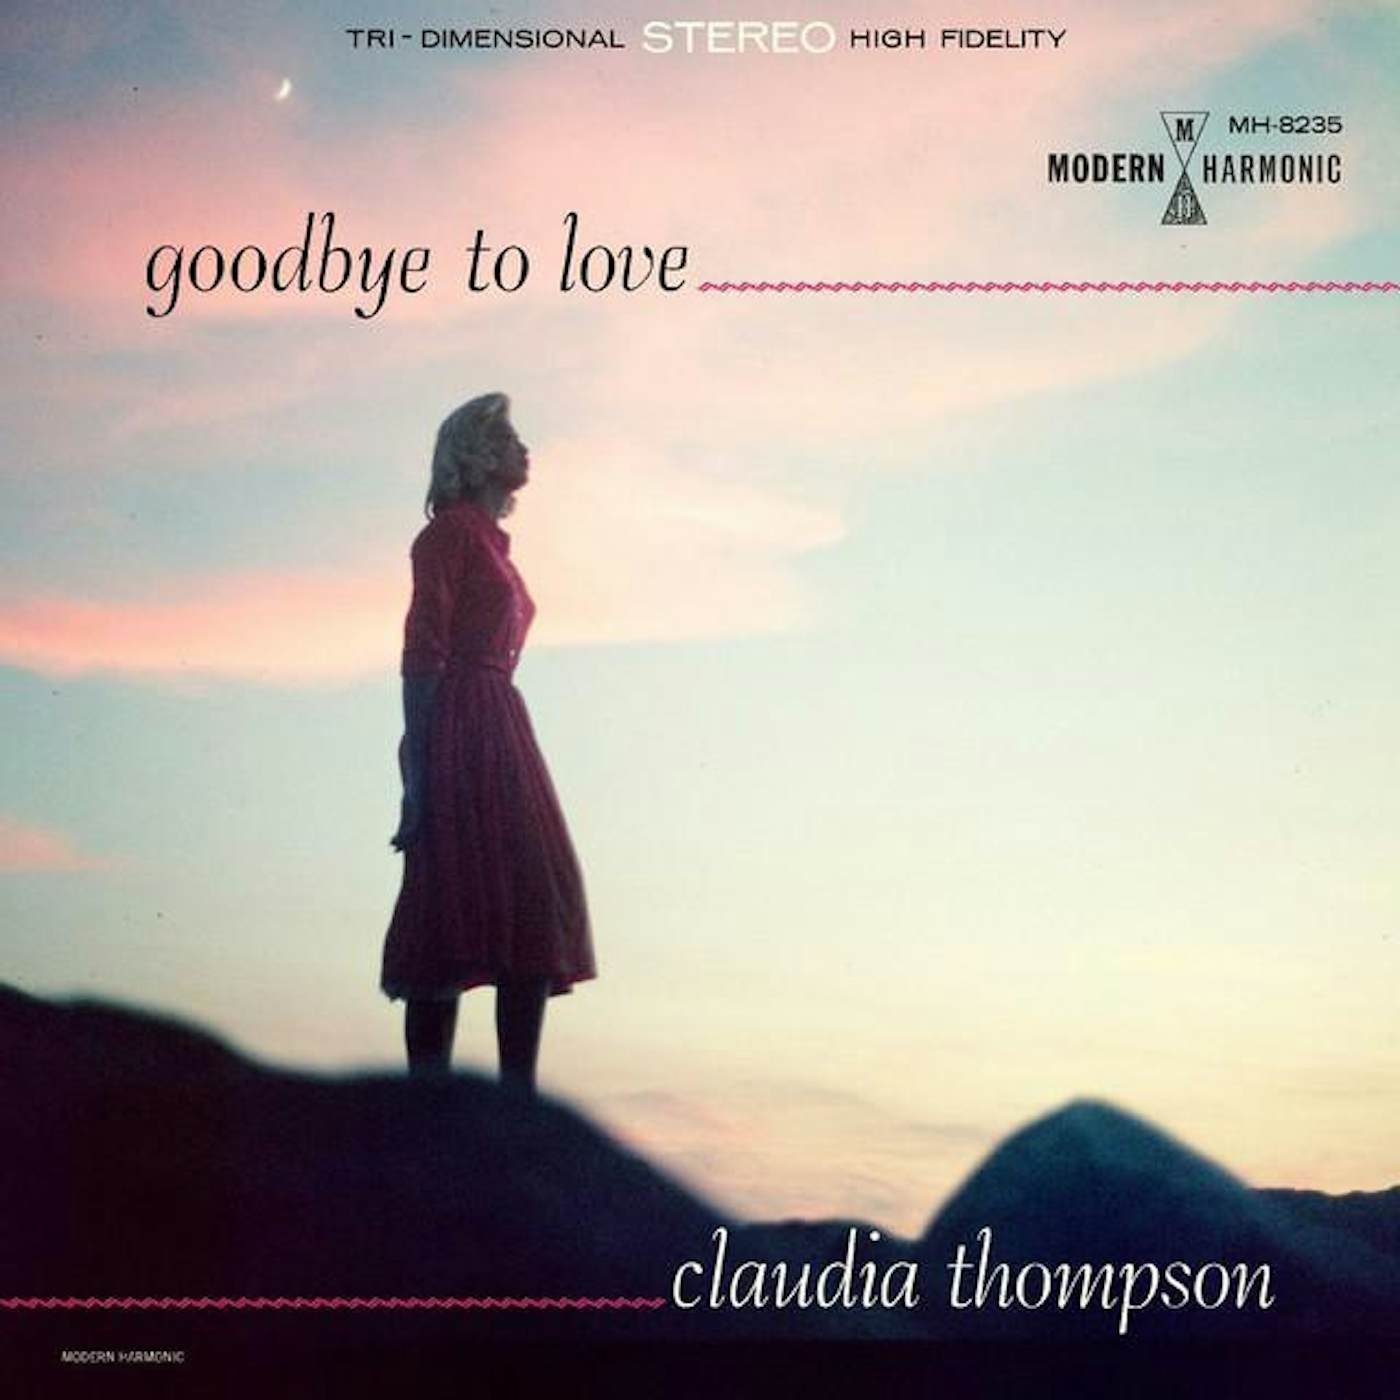 Claudia Thompson